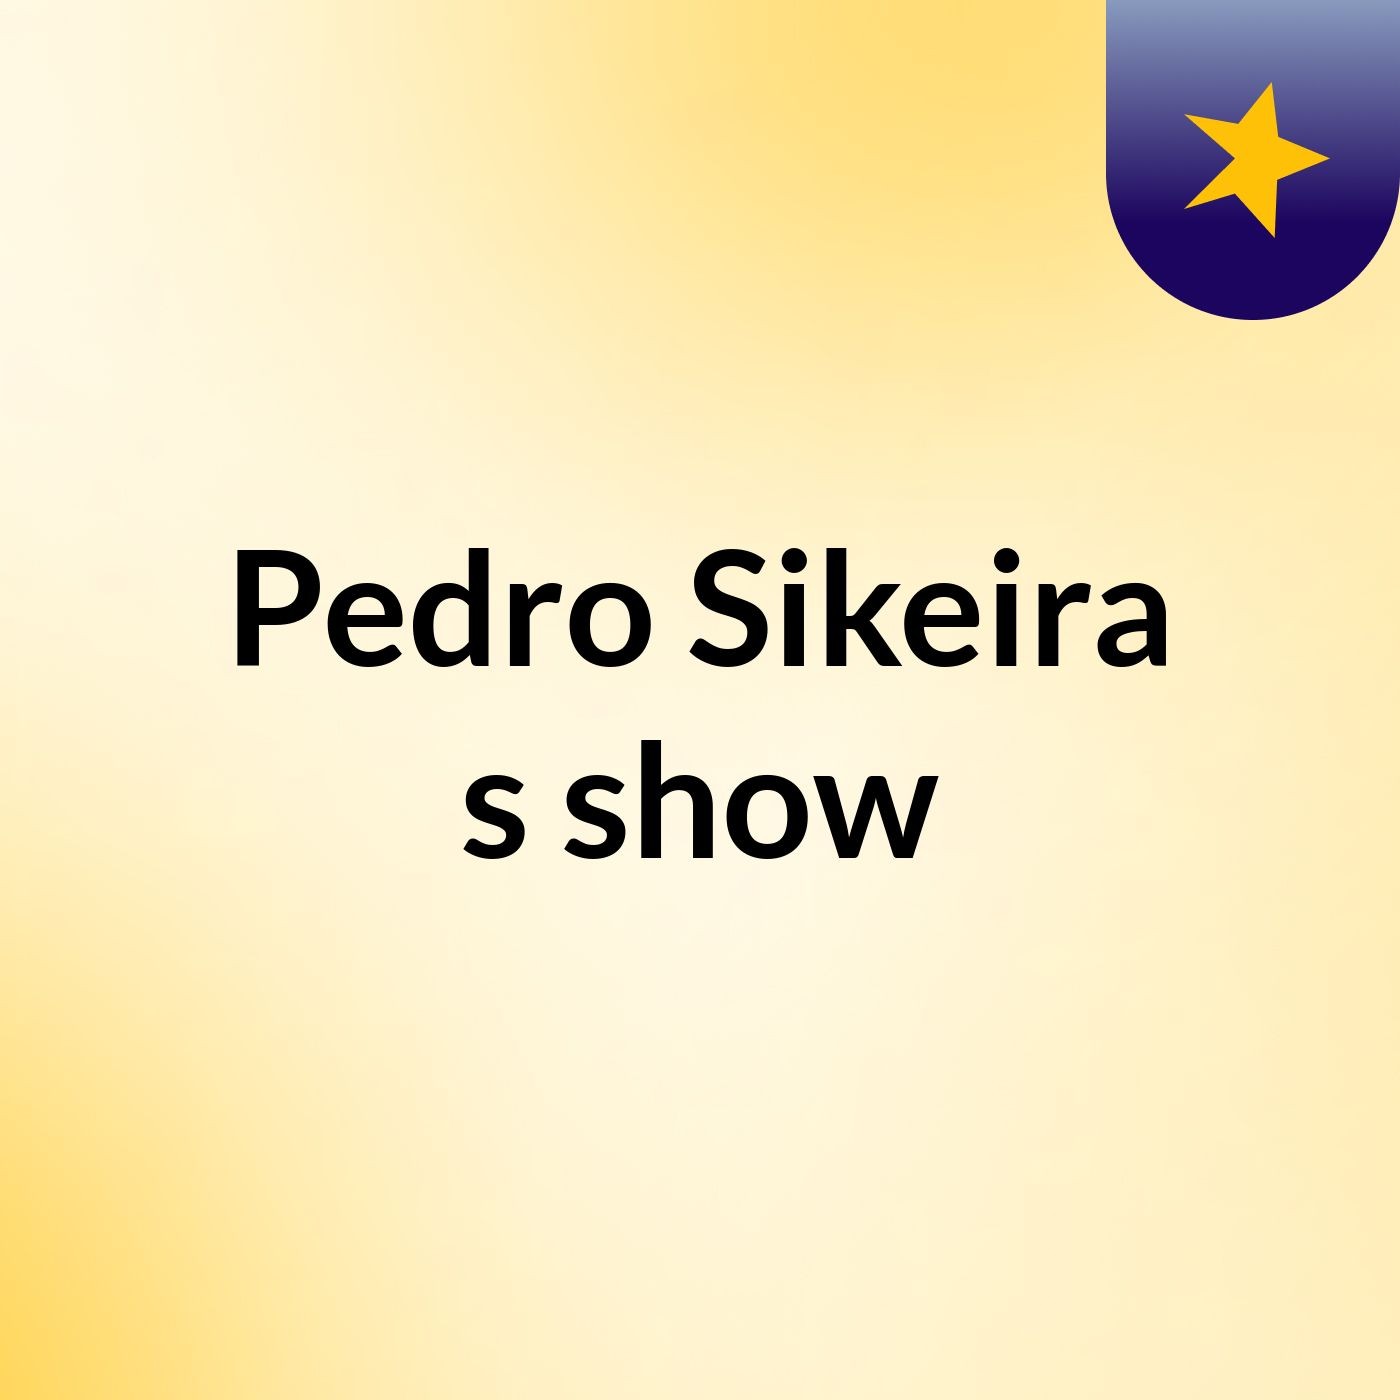 Pedro Sikeira's show